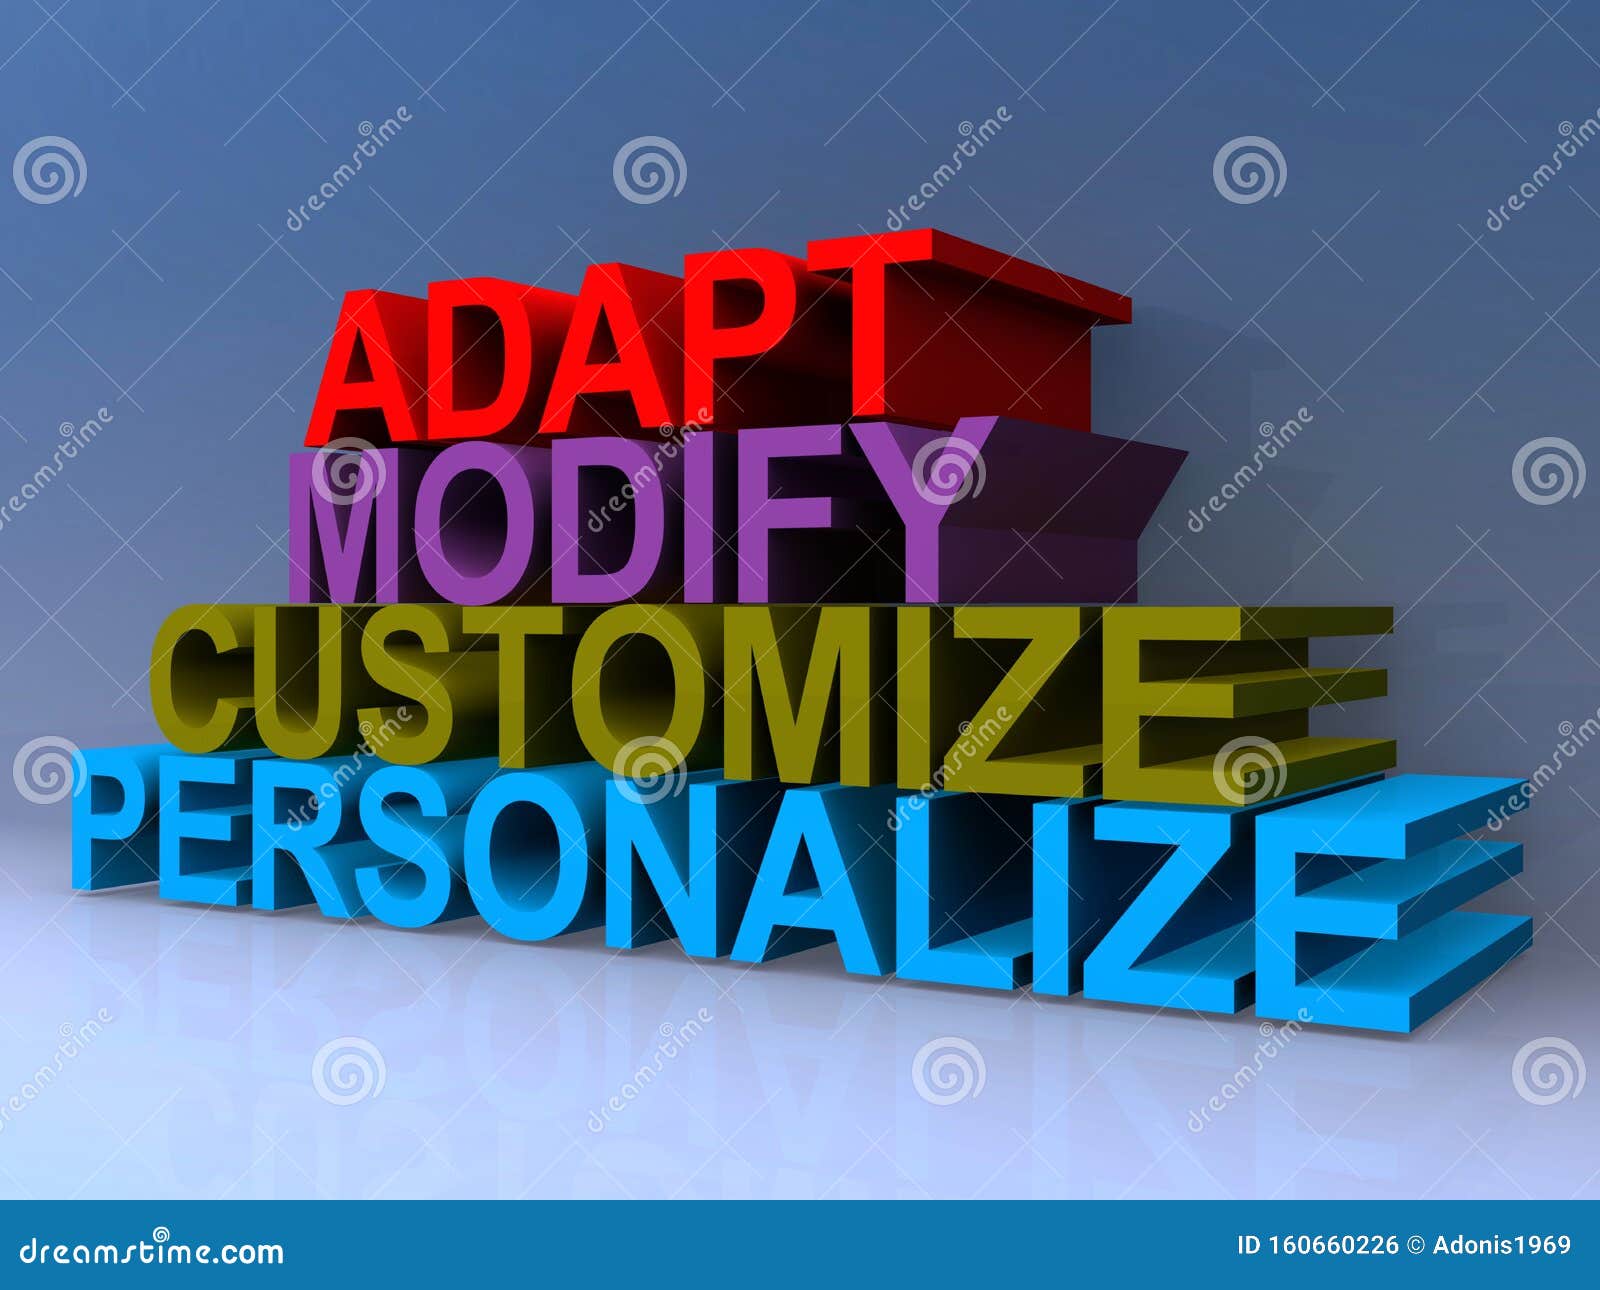 adapt, modify, customize, personalize